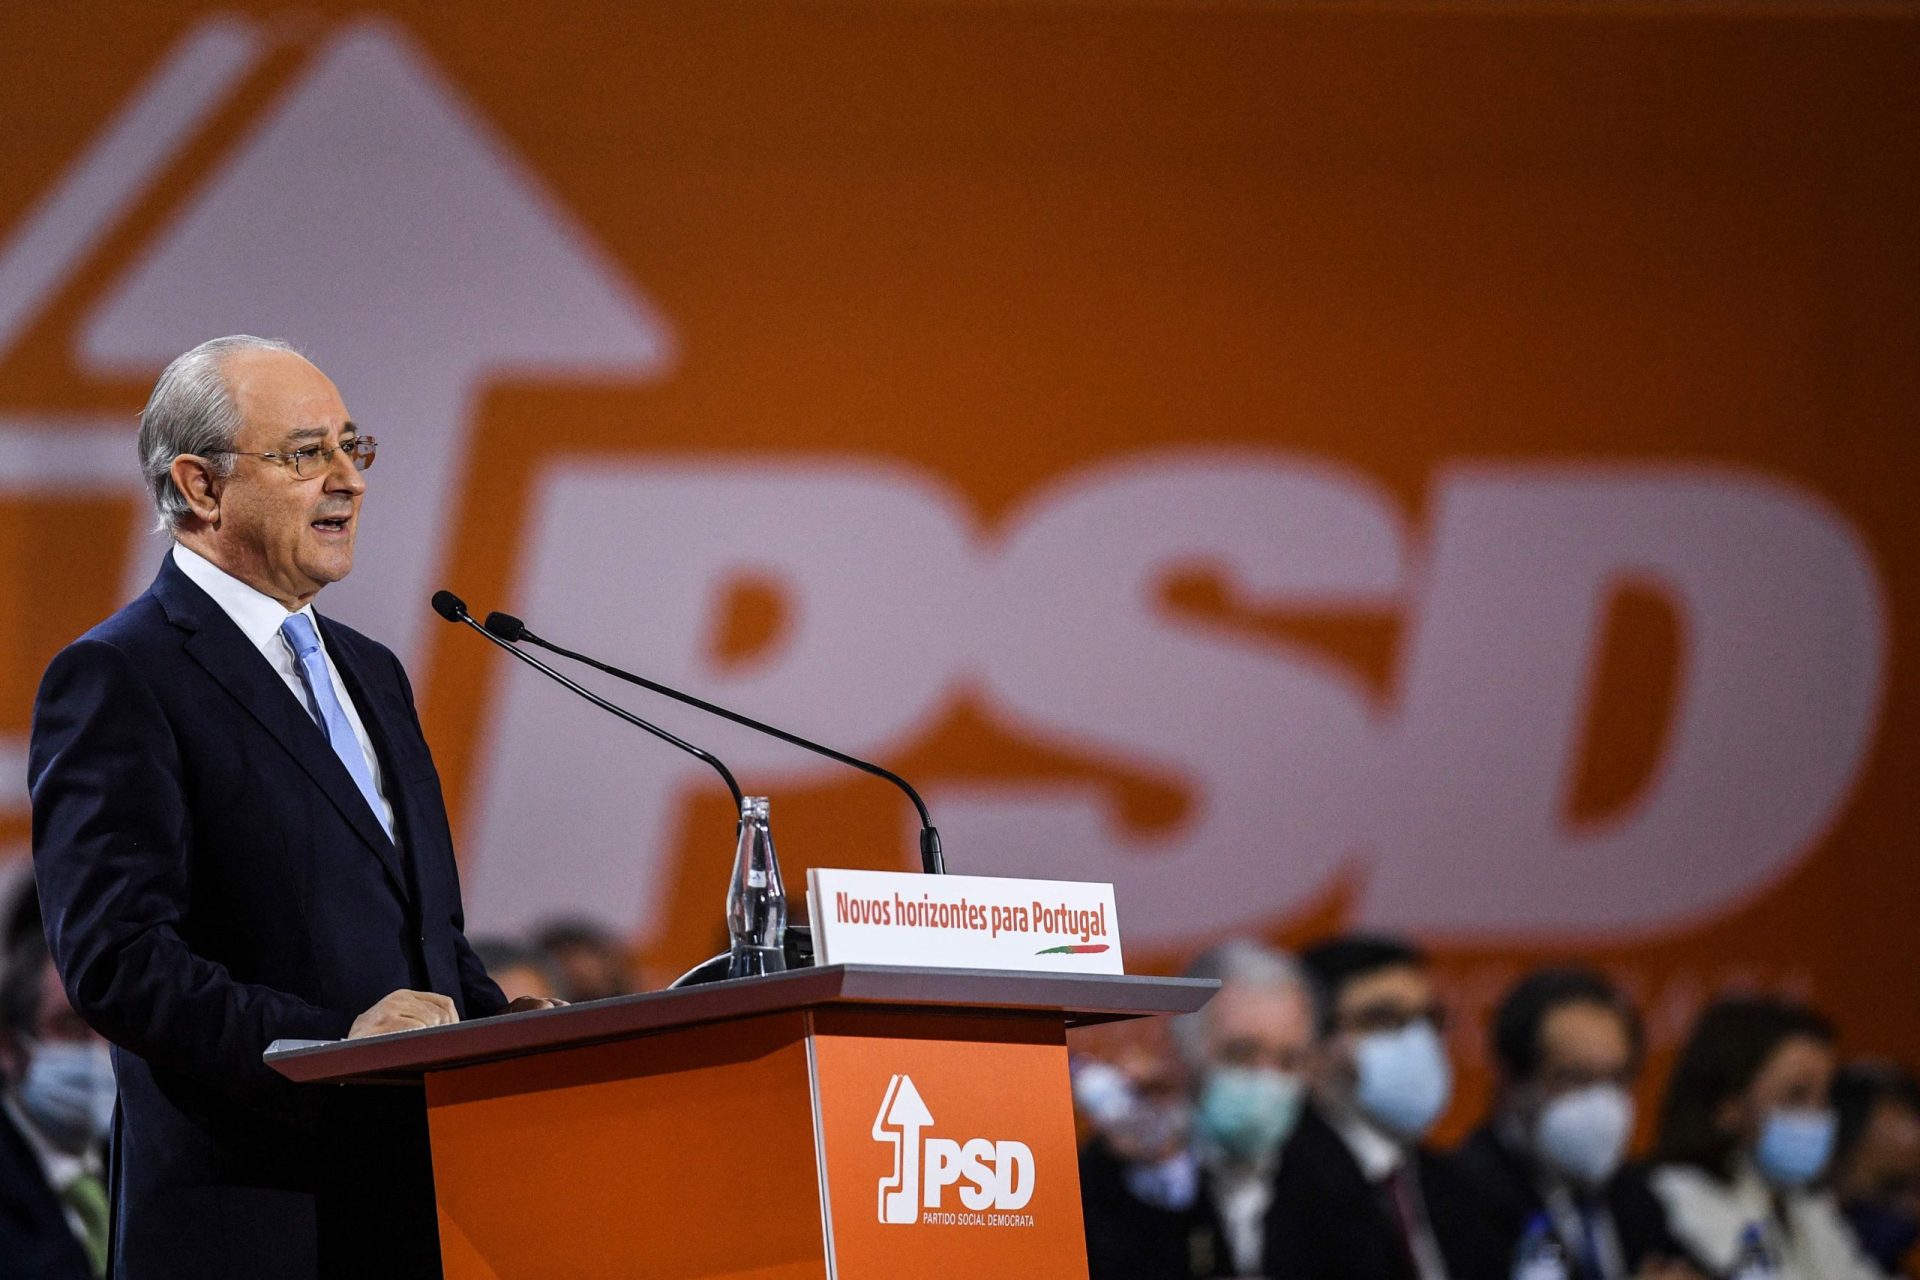 Rui Rio acusa PS de mentir aos emigrantes e apela ao voto para combater “fraudes eleitorais”